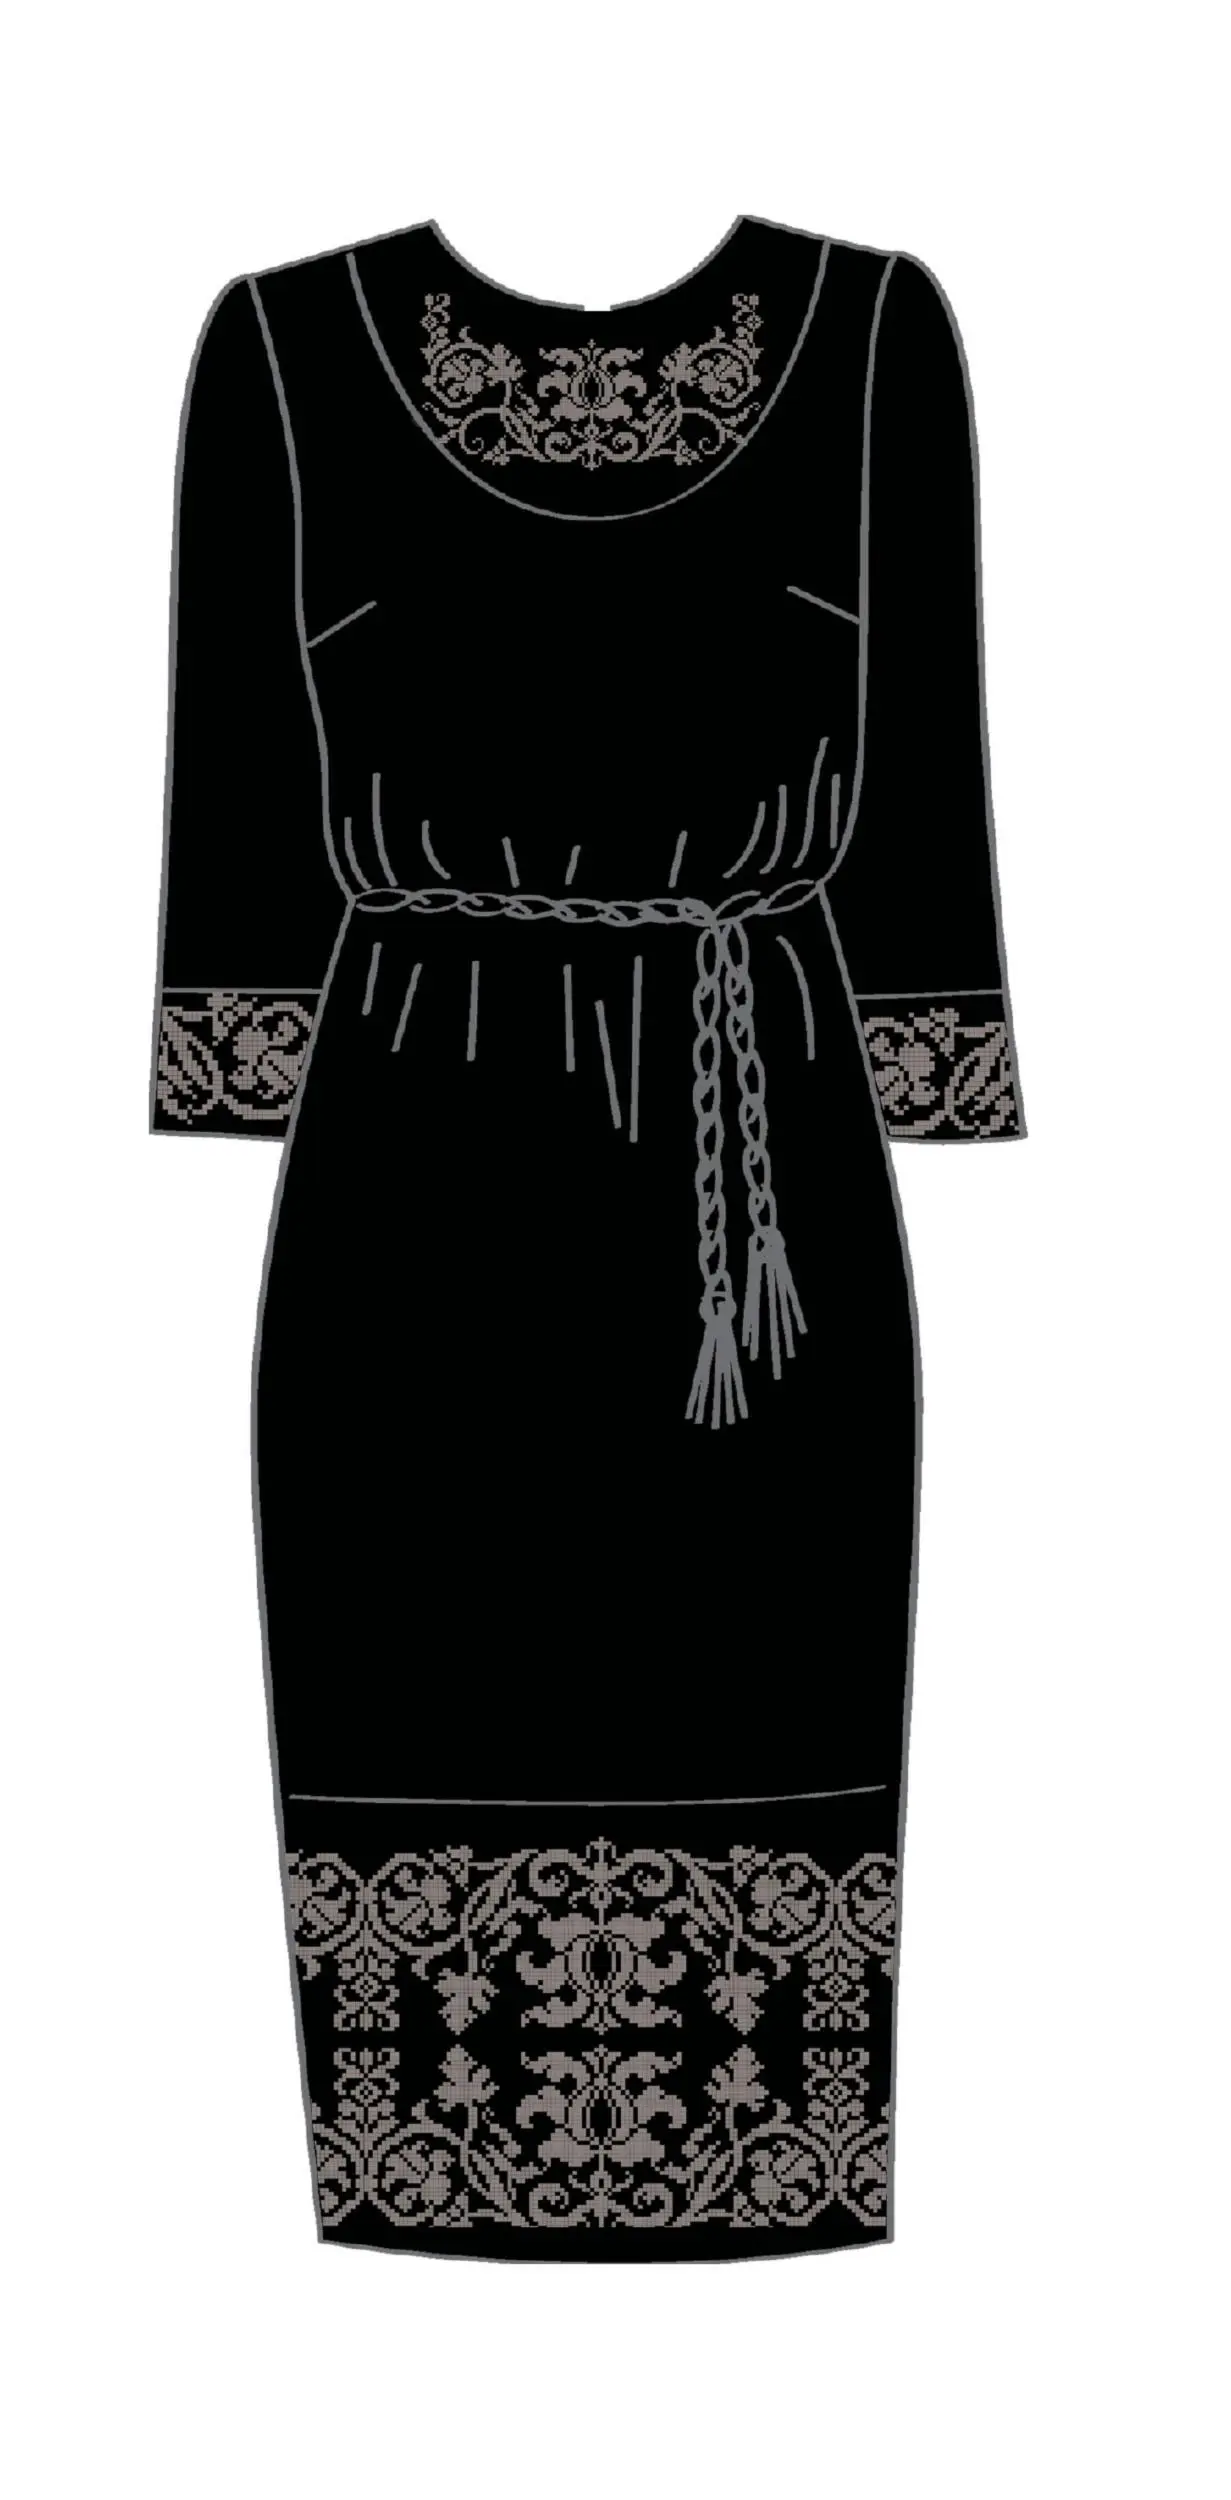 820-14/10 Плаття жіноче з поясом, чорне, розмір 46